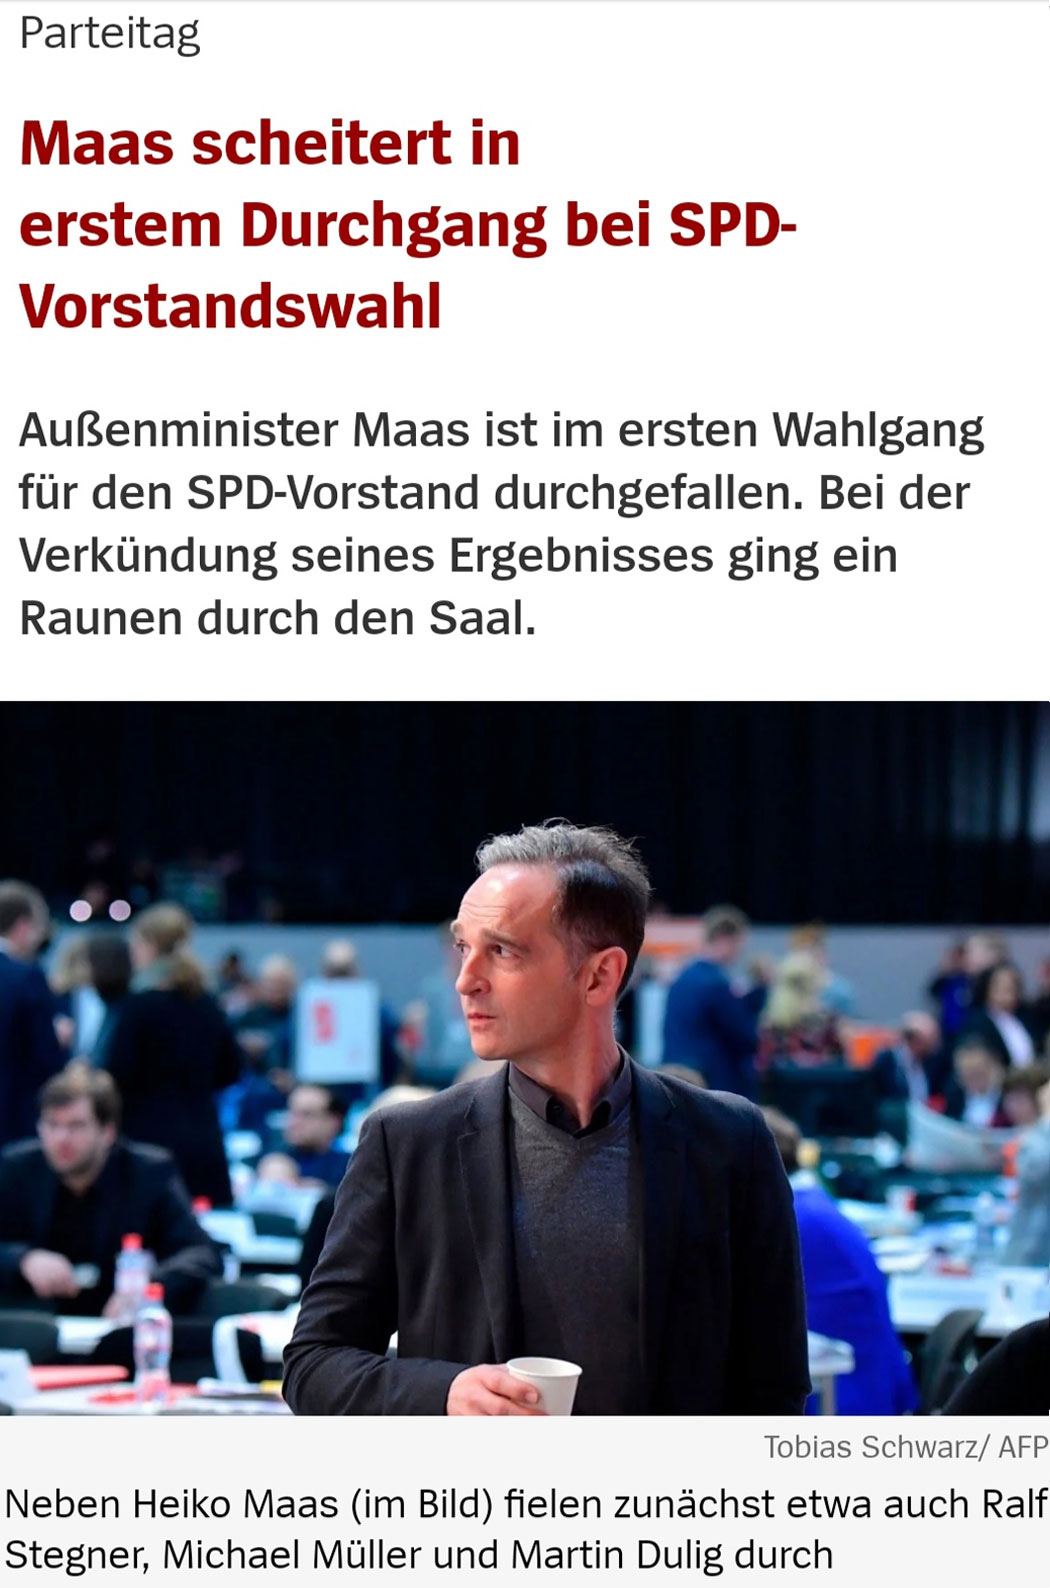 Maas scheitert in erstem Durchgang bei SPD-Vorstandswahl